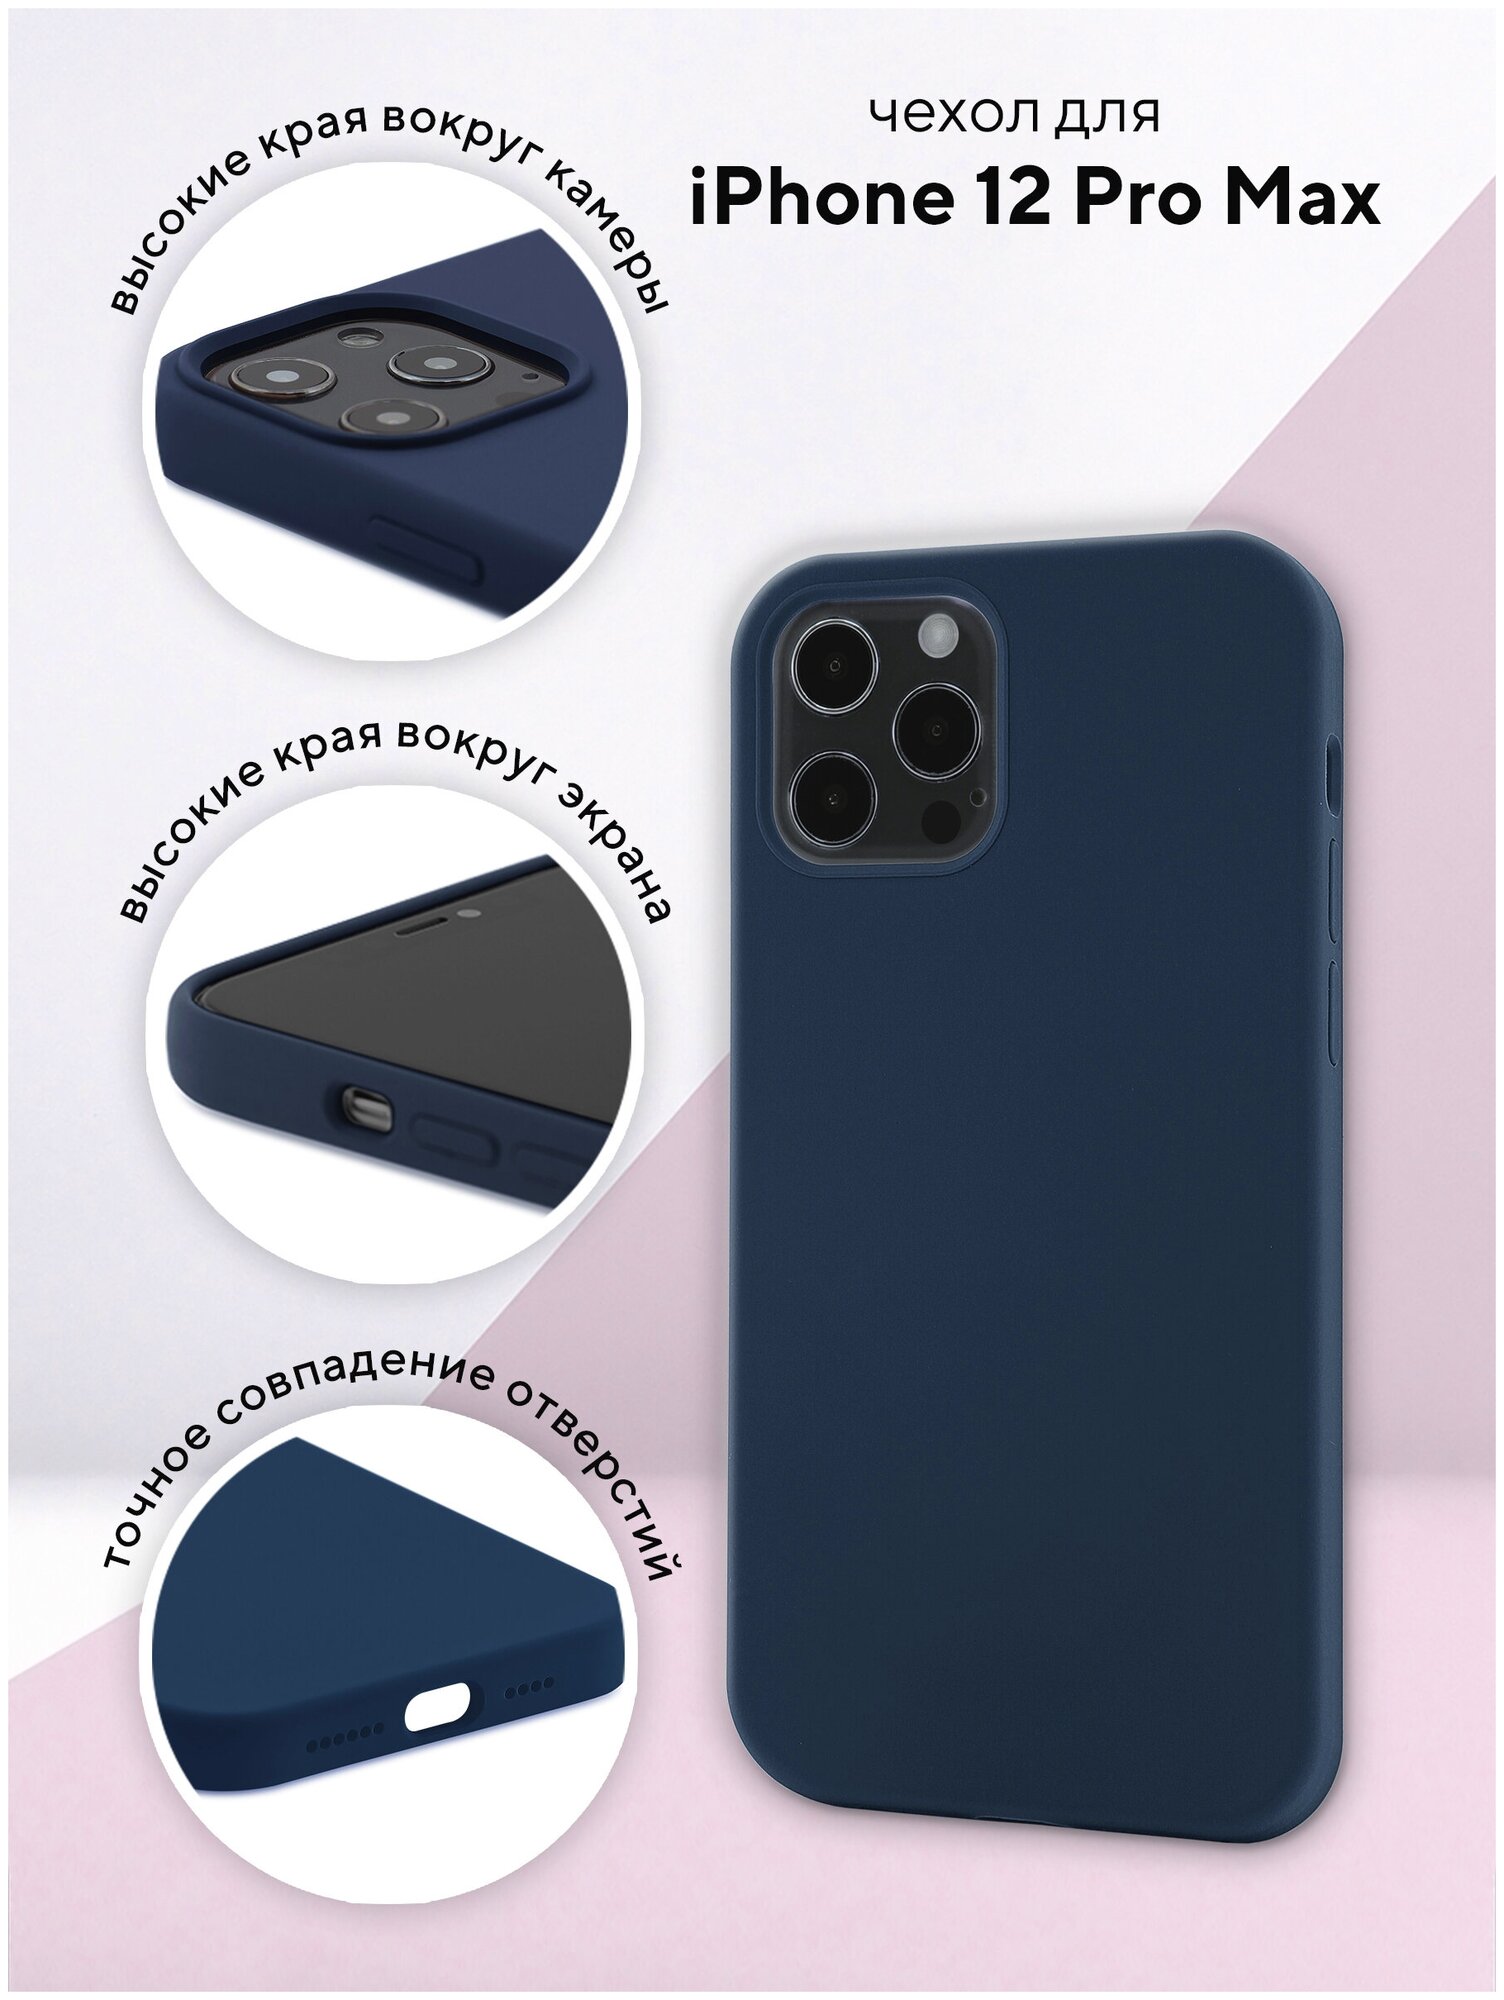 Чехол для Apple iPhone 12 Pro Max КRUЧЕ Silicone Navy blue, противоударный кейс, защитный силиконовый бампер, софттач накладка с защитой камеры